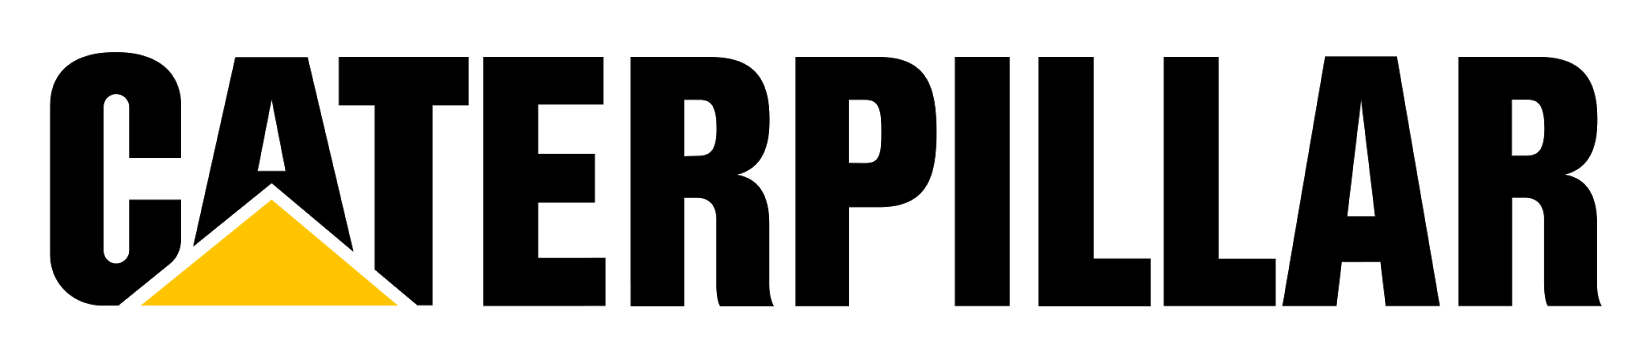 PNGPIX-COM-Caterpillar-Logo-PNG-Transparent